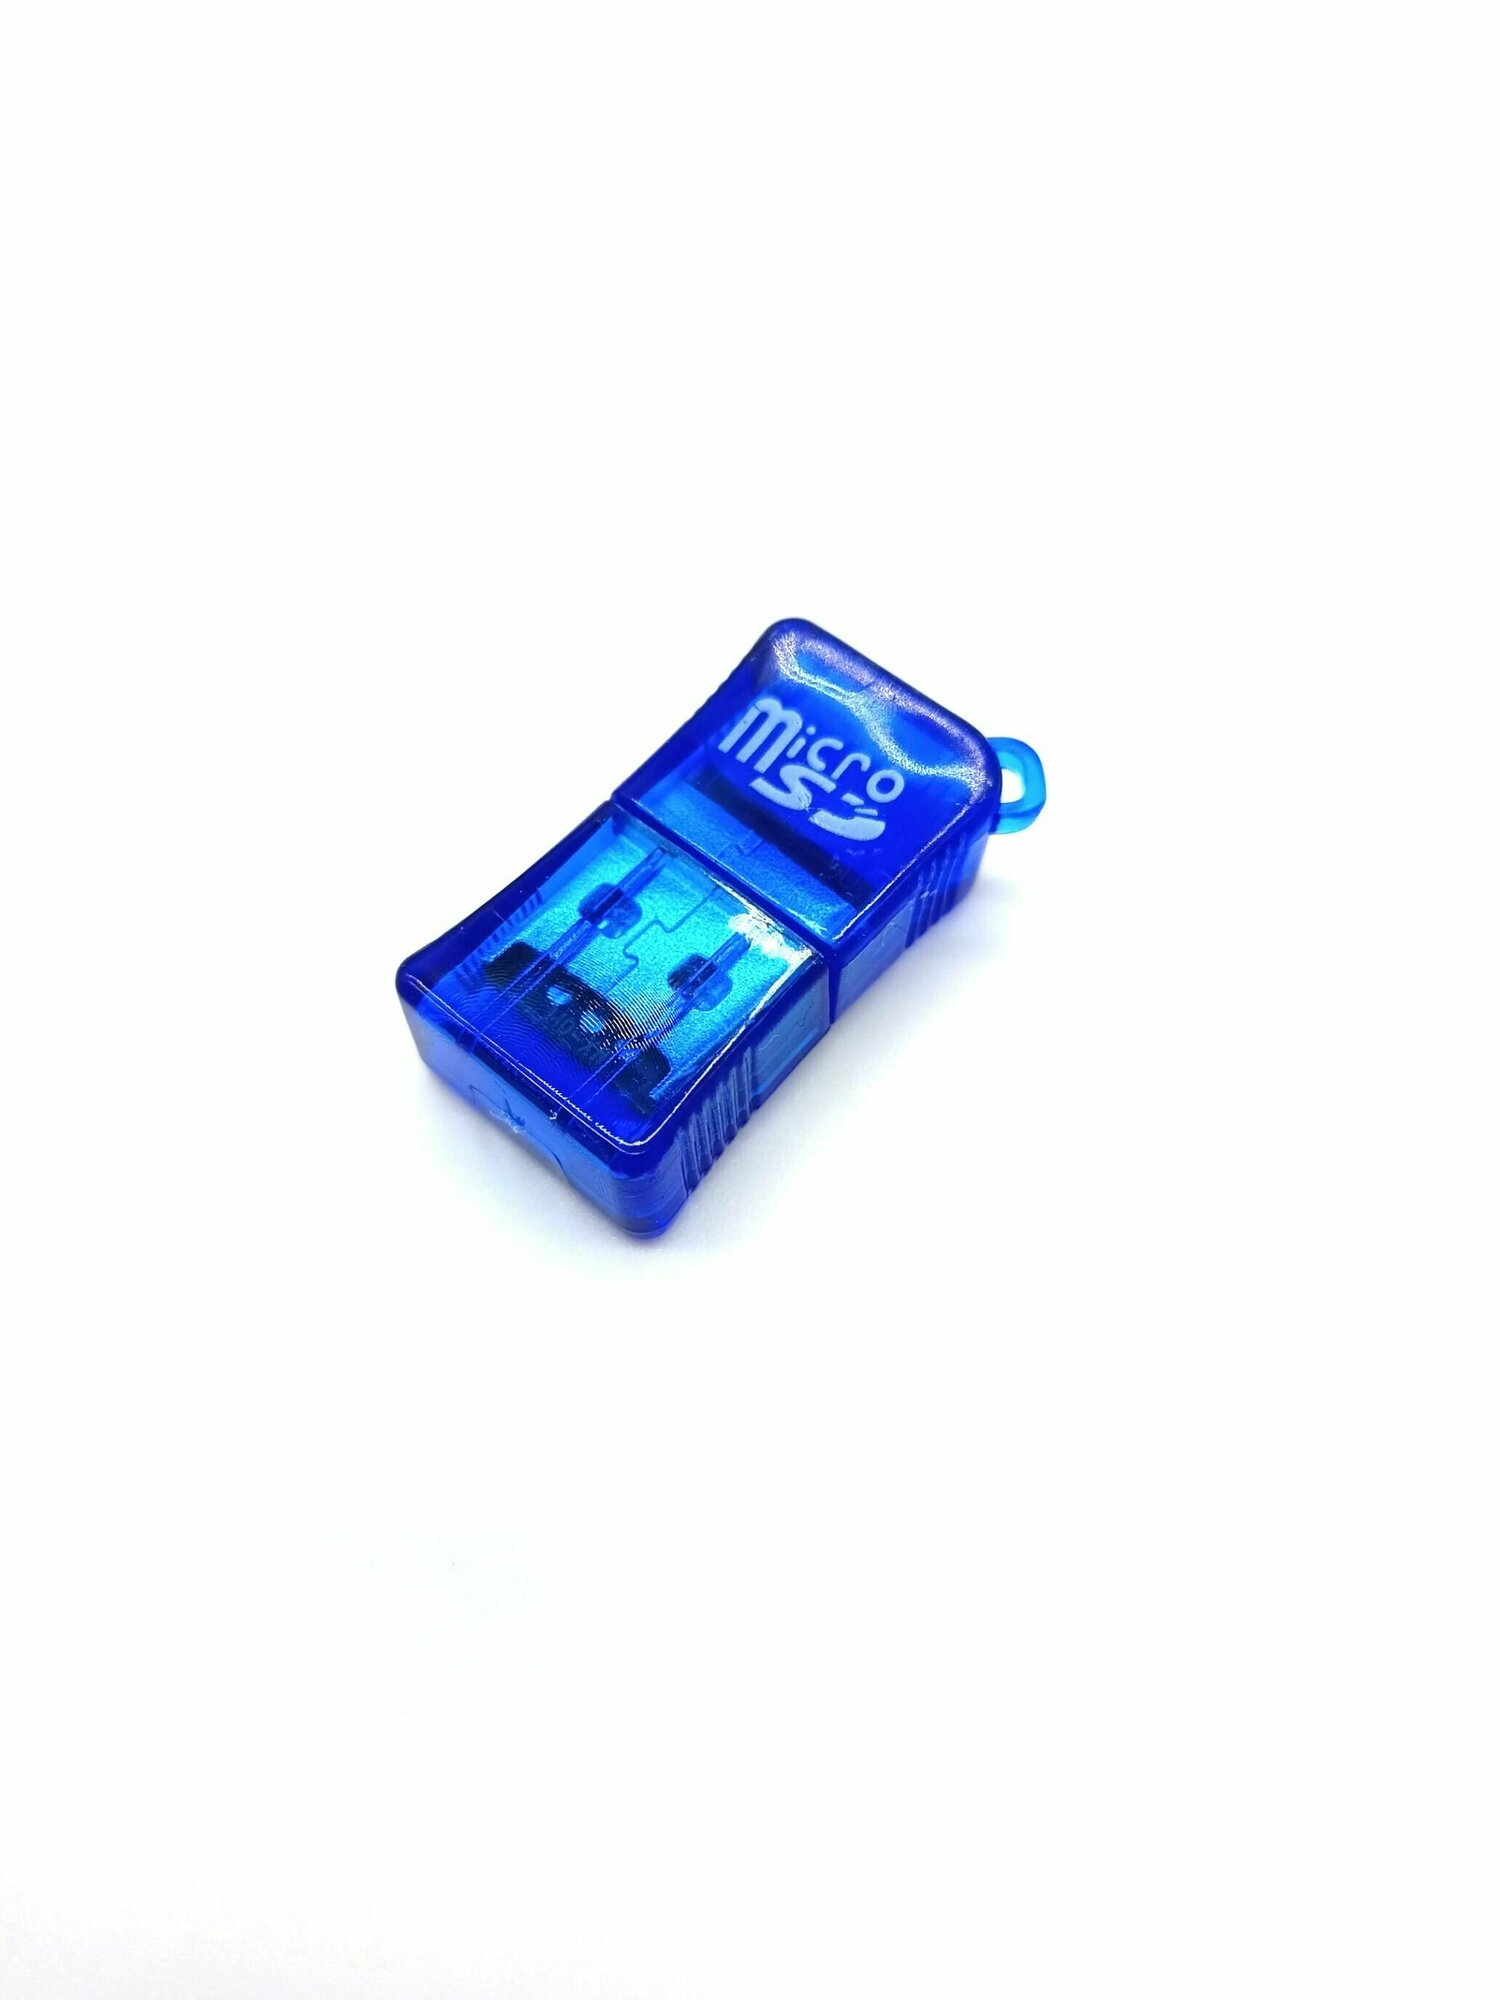 Картридер-Переходник USB-MicroSD Цвет синий